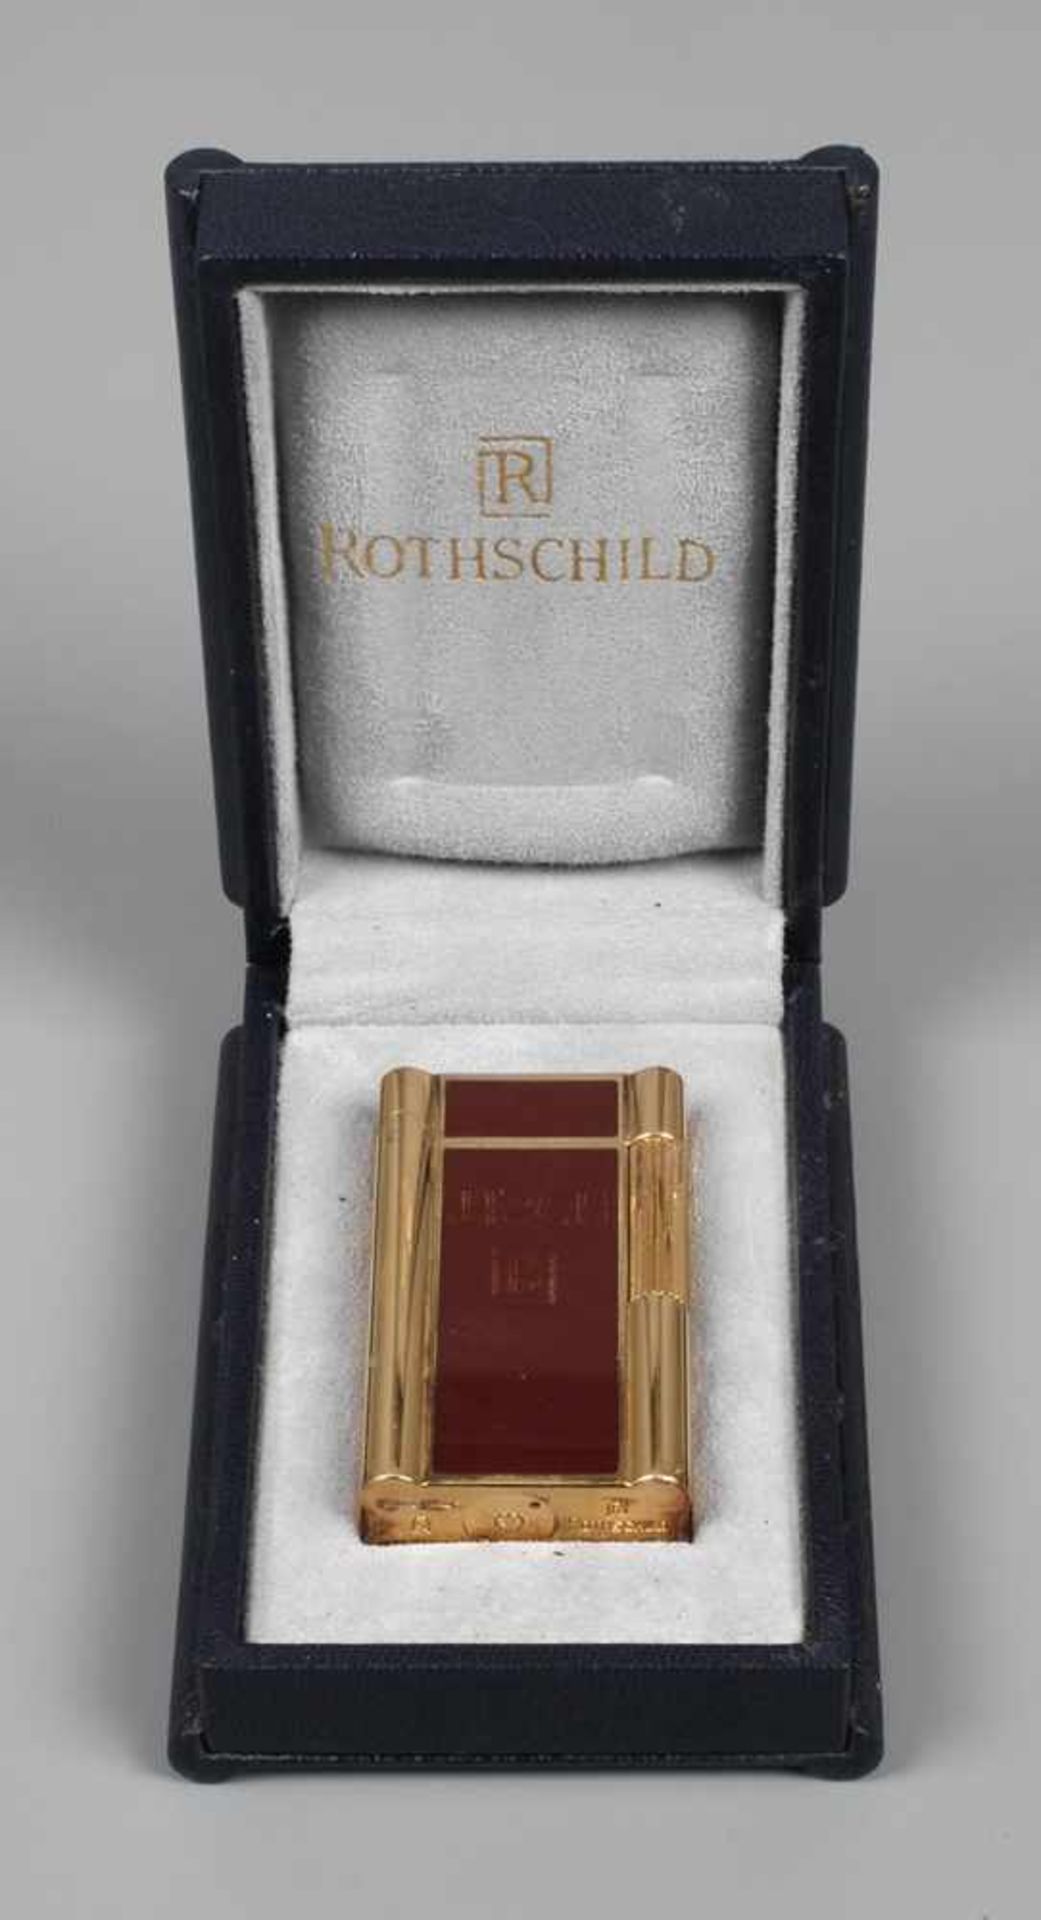 Feuerzeug Rothschild 20. Jh., an der Unterseite gemarkt Rothschild und nummeriert OG 1005,